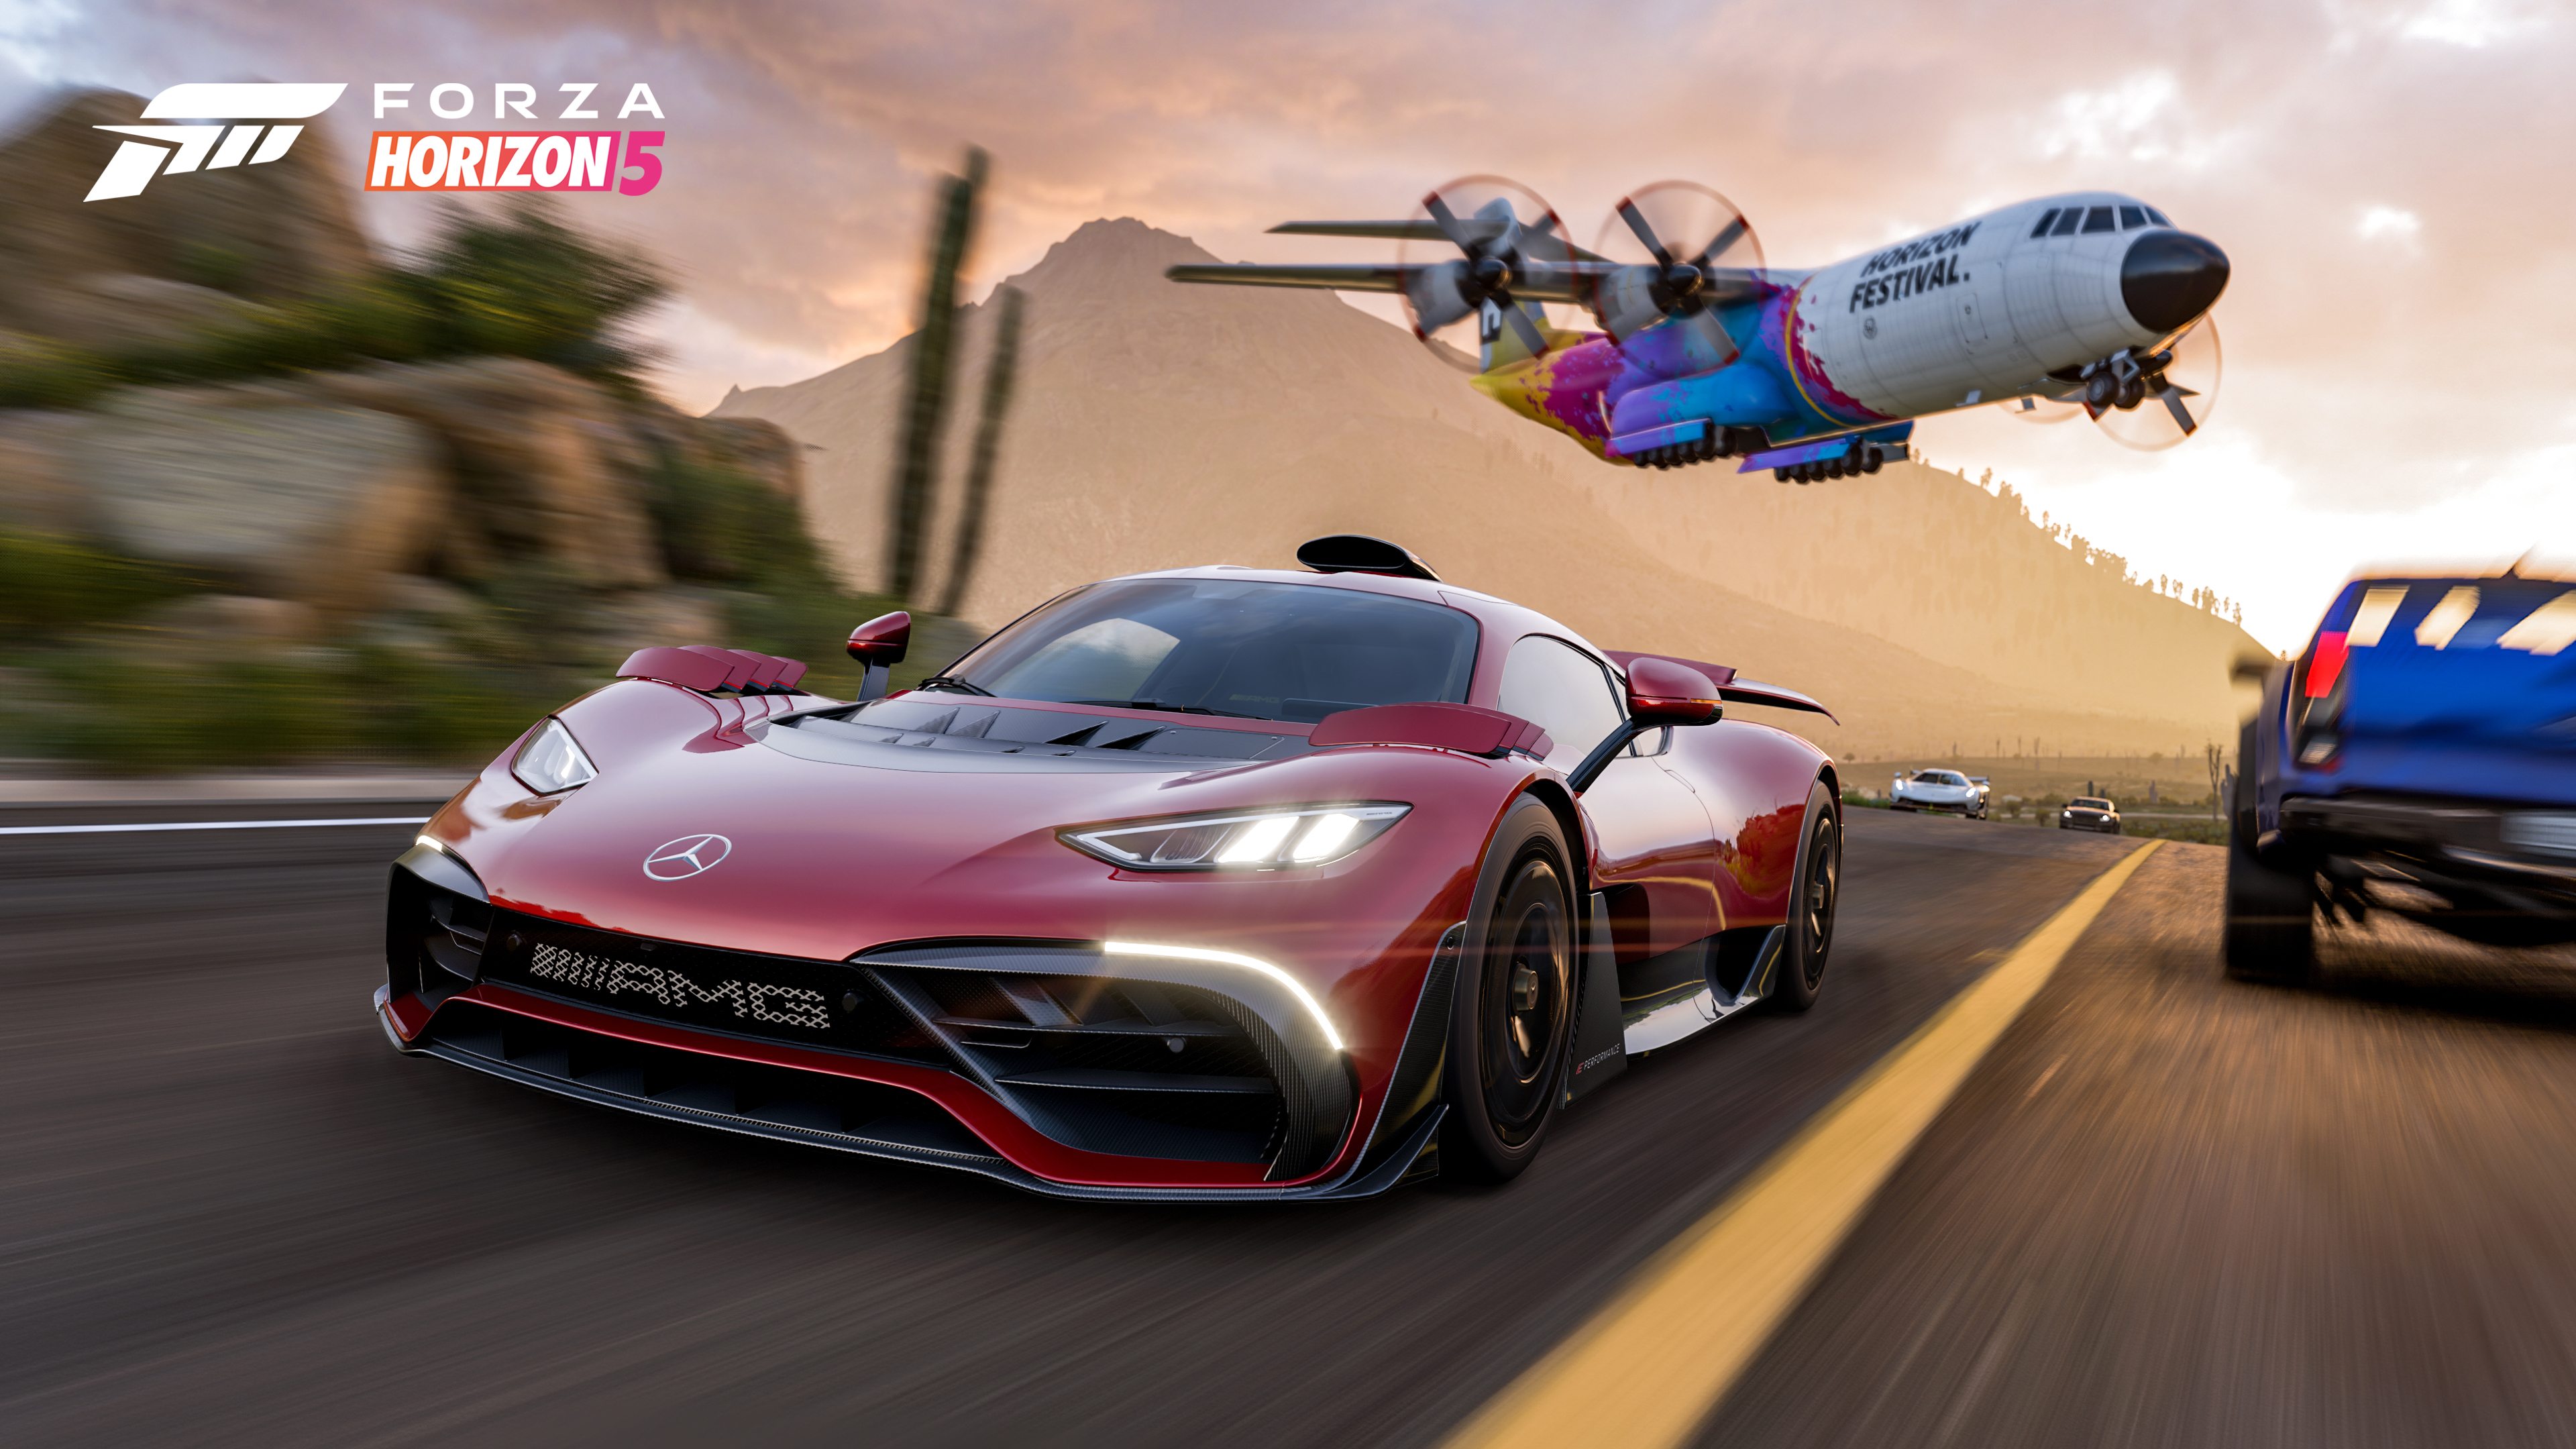 Cinco videojuegos de carros y carreras para recomendar